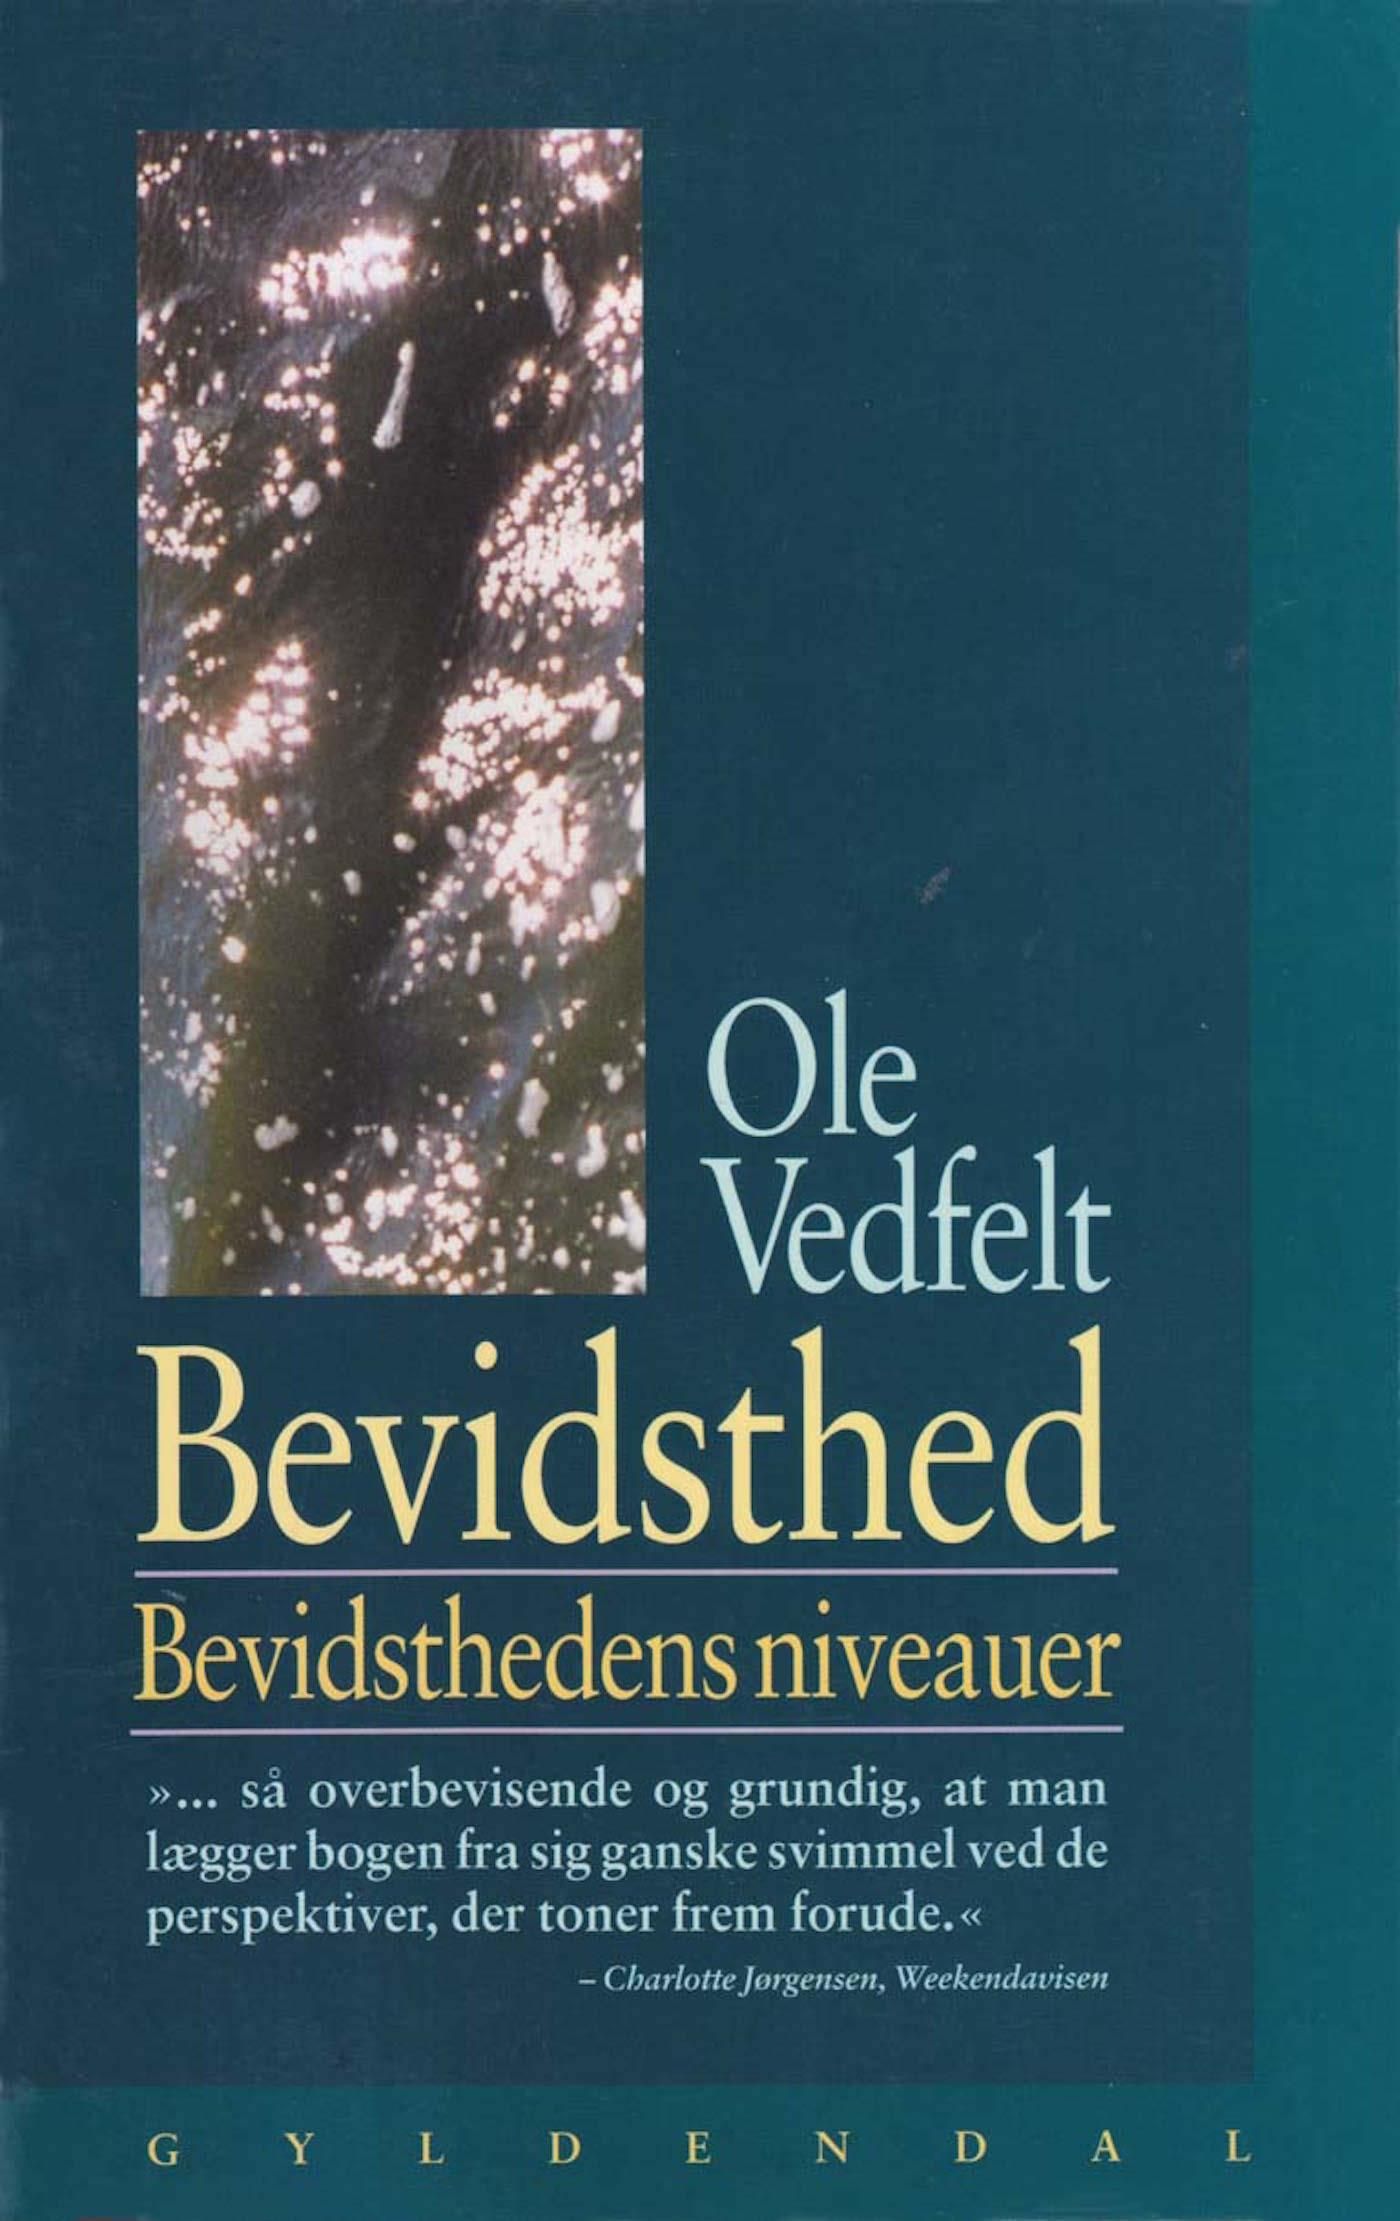 Bevidsthed, e-bok av Ole Vedfelt